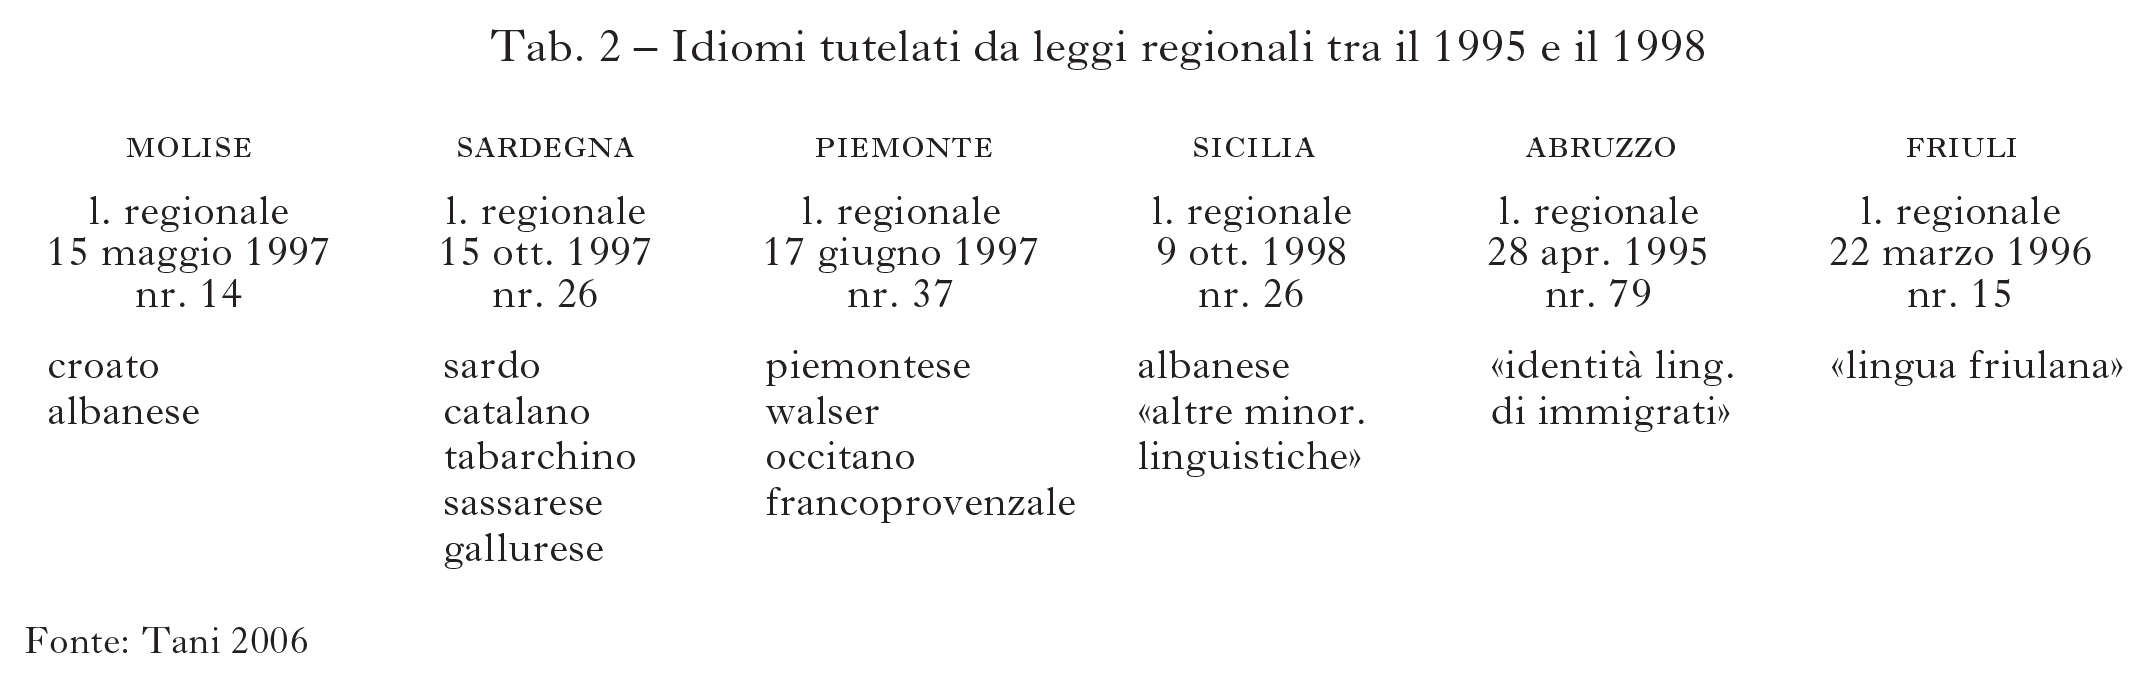 Le Minoranze Linguistiche In L Italia E Le Sue Regioni